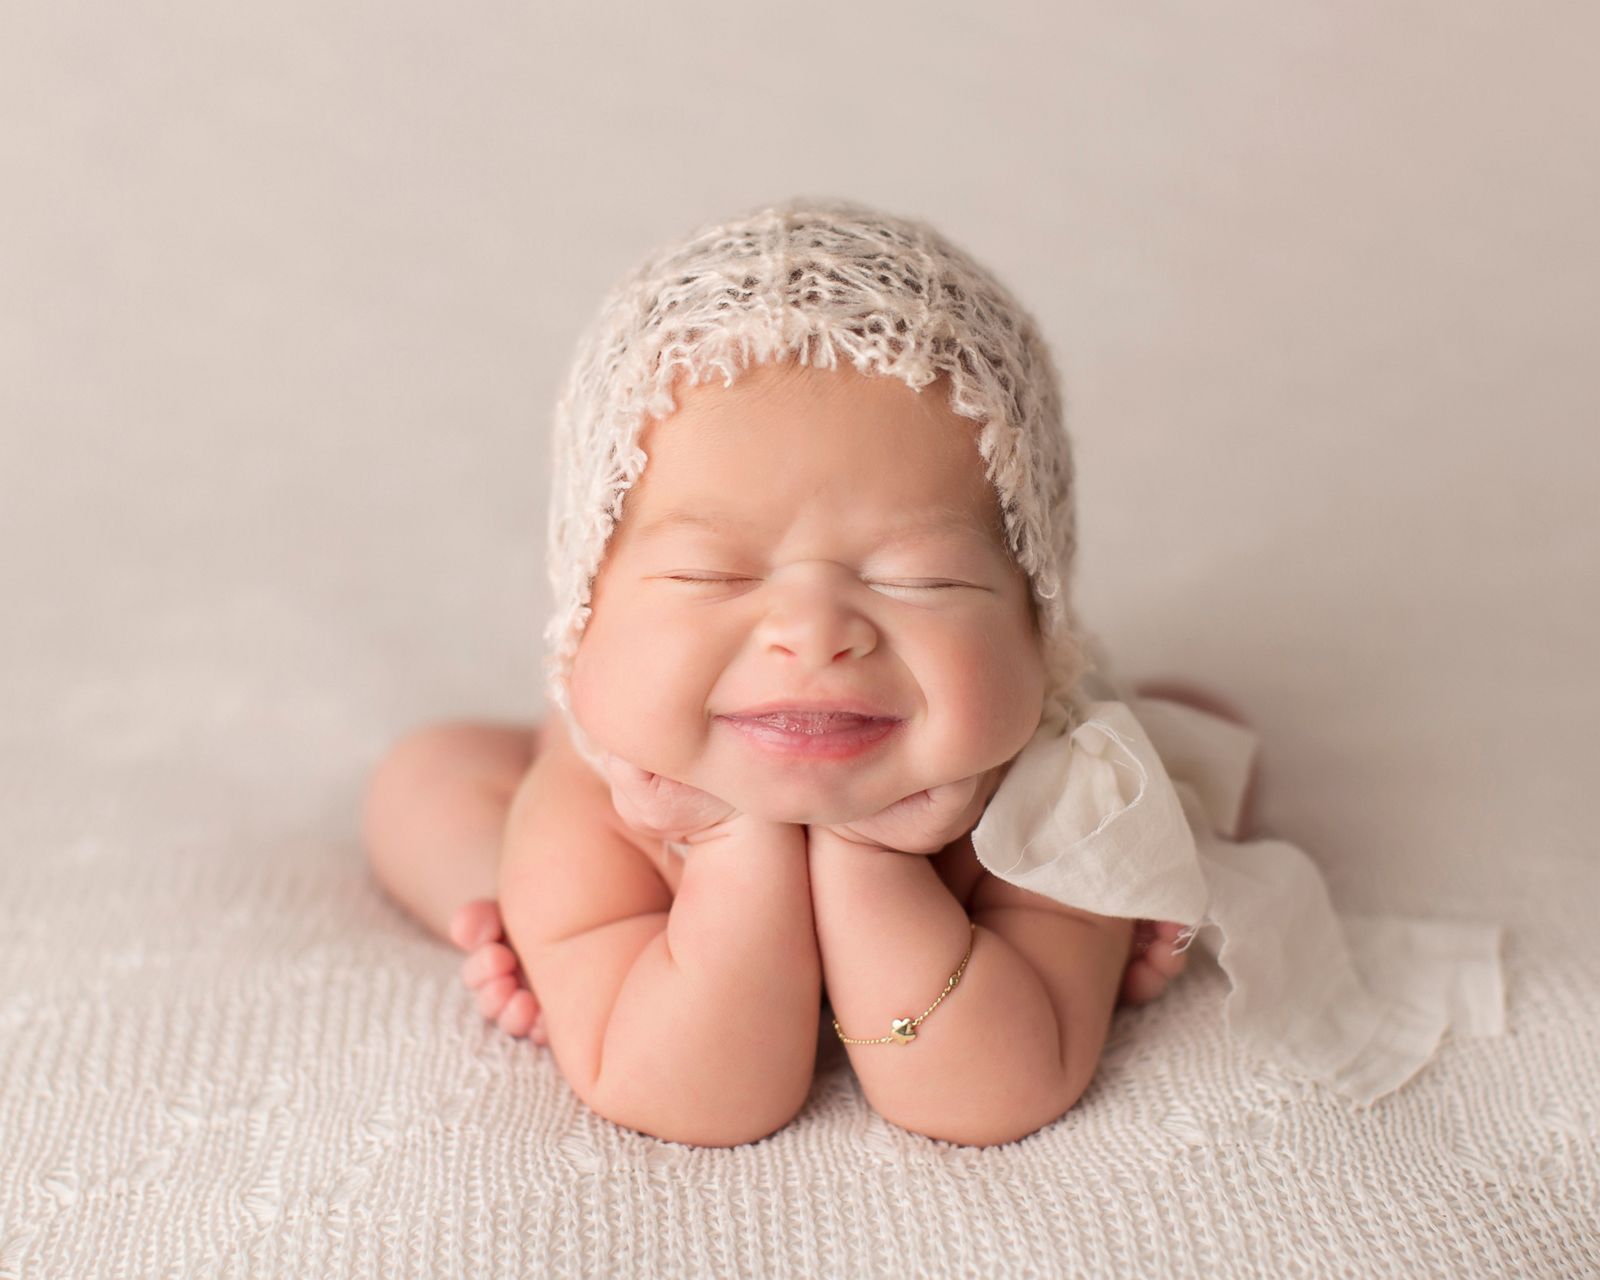 Младенец улыбается